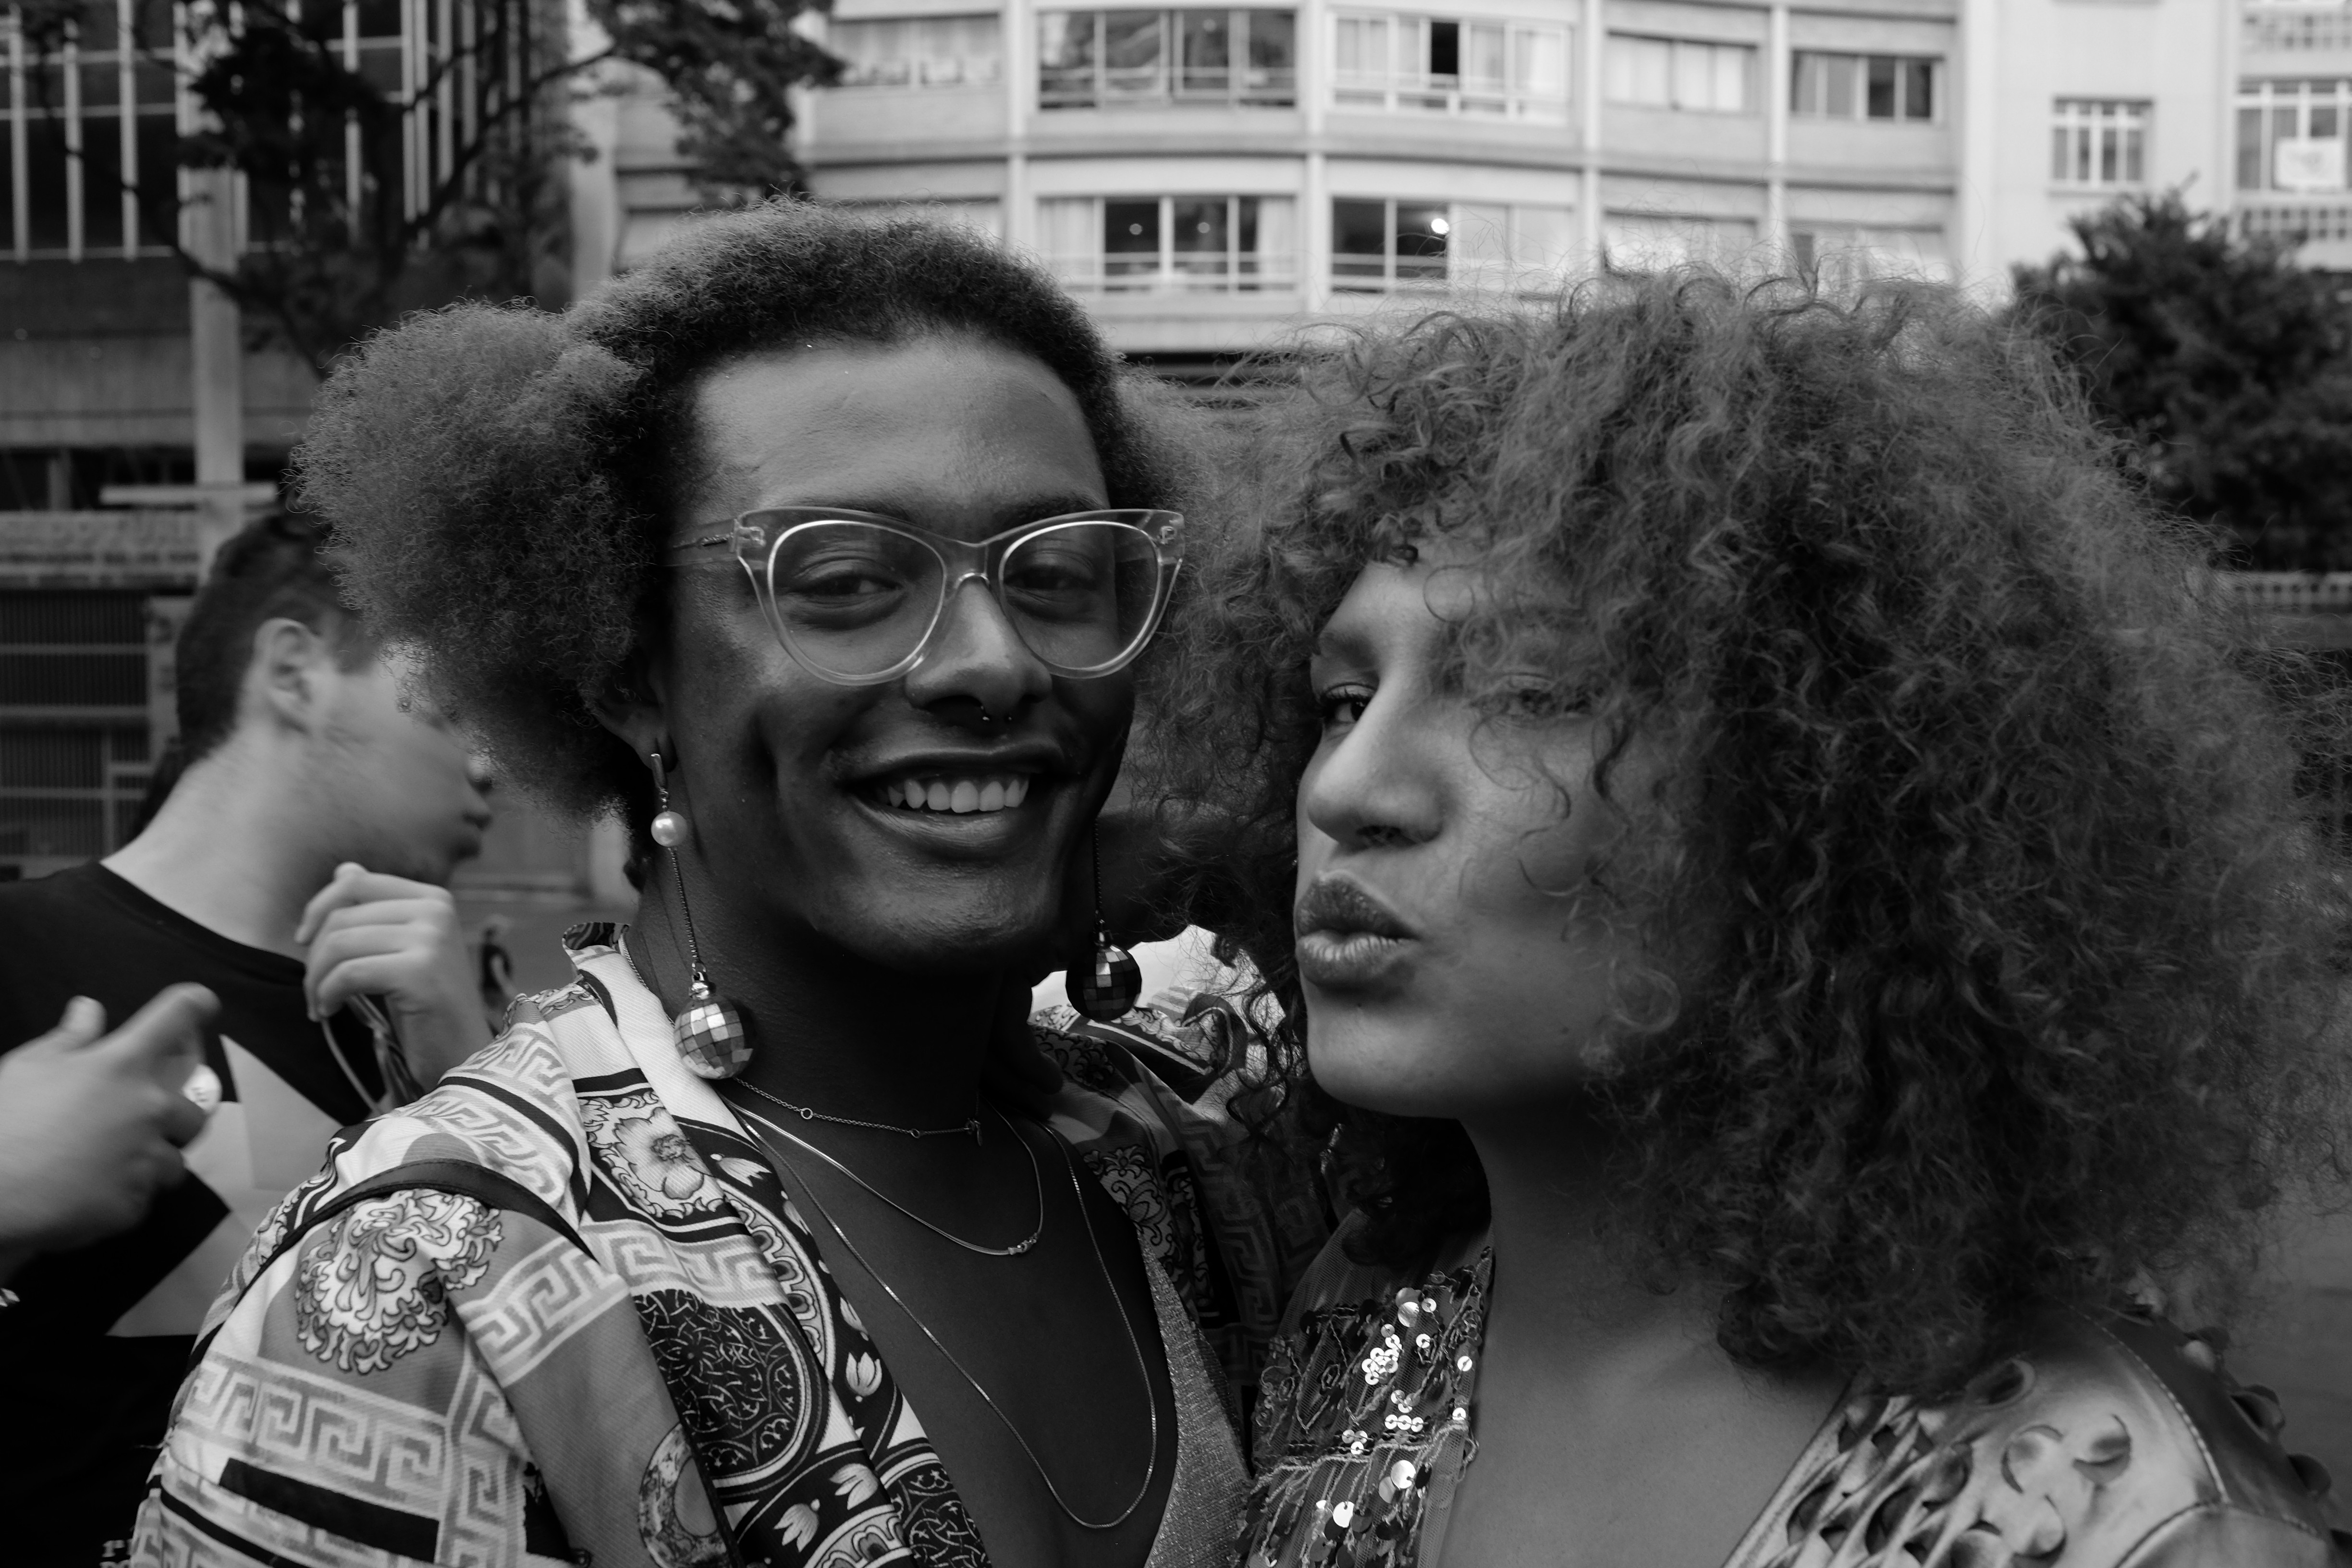 As cantoras Liniker Barros e Candy mel na Marcha Trans, em São Paulo (Foto: Divulgação)